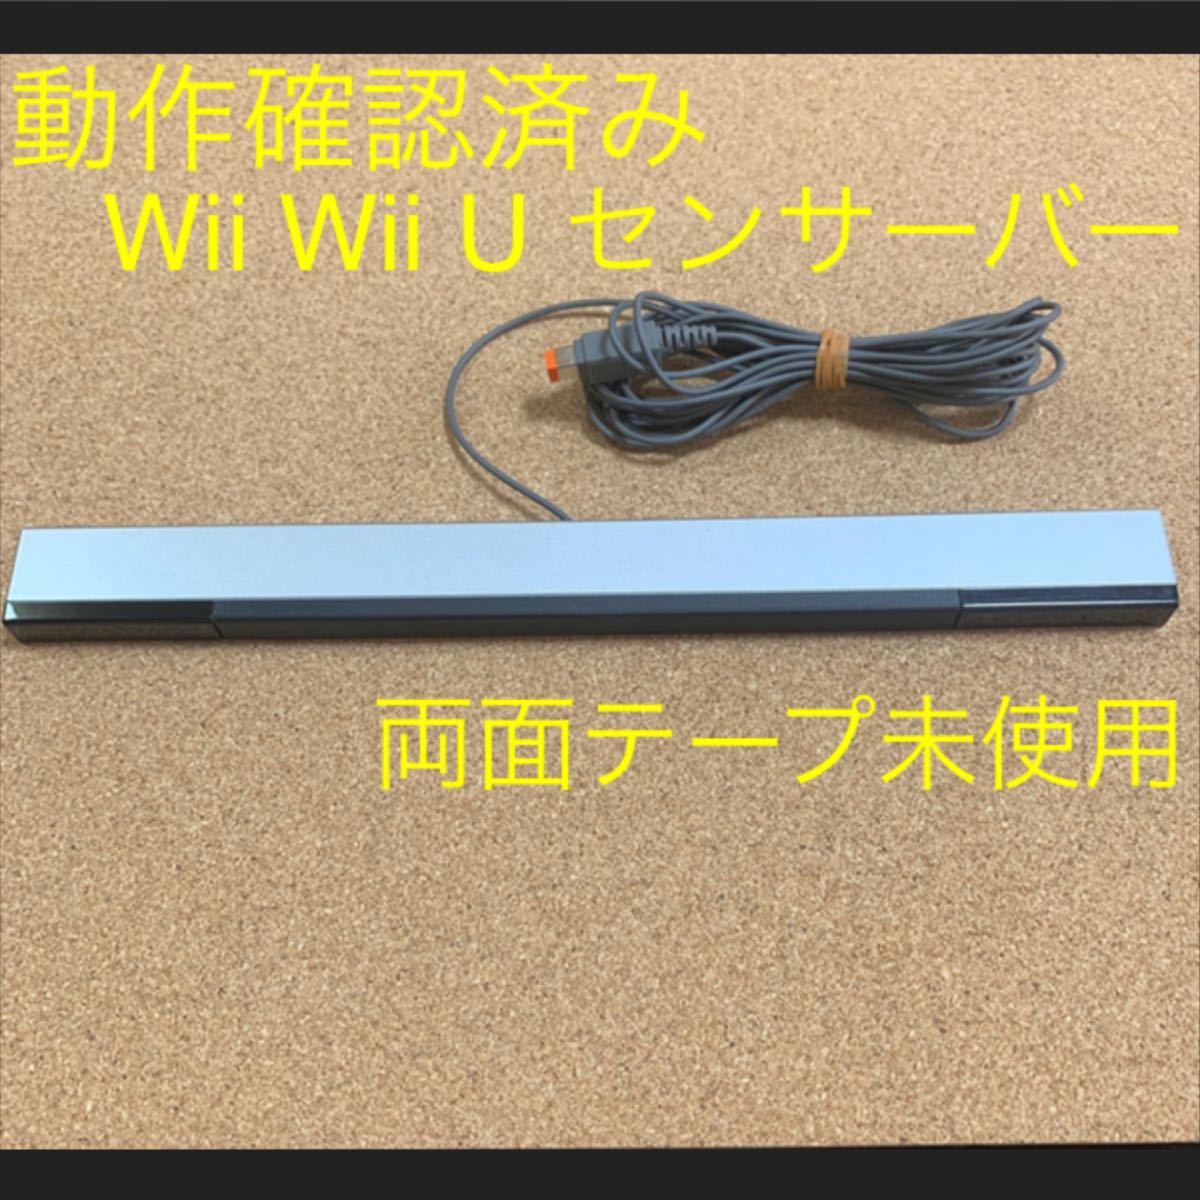 動作確認済み Wii Wii U 兼用 純正センサーバー シルバー ニンテンドー Nintendo 任天堂 ウィー ウィーユー